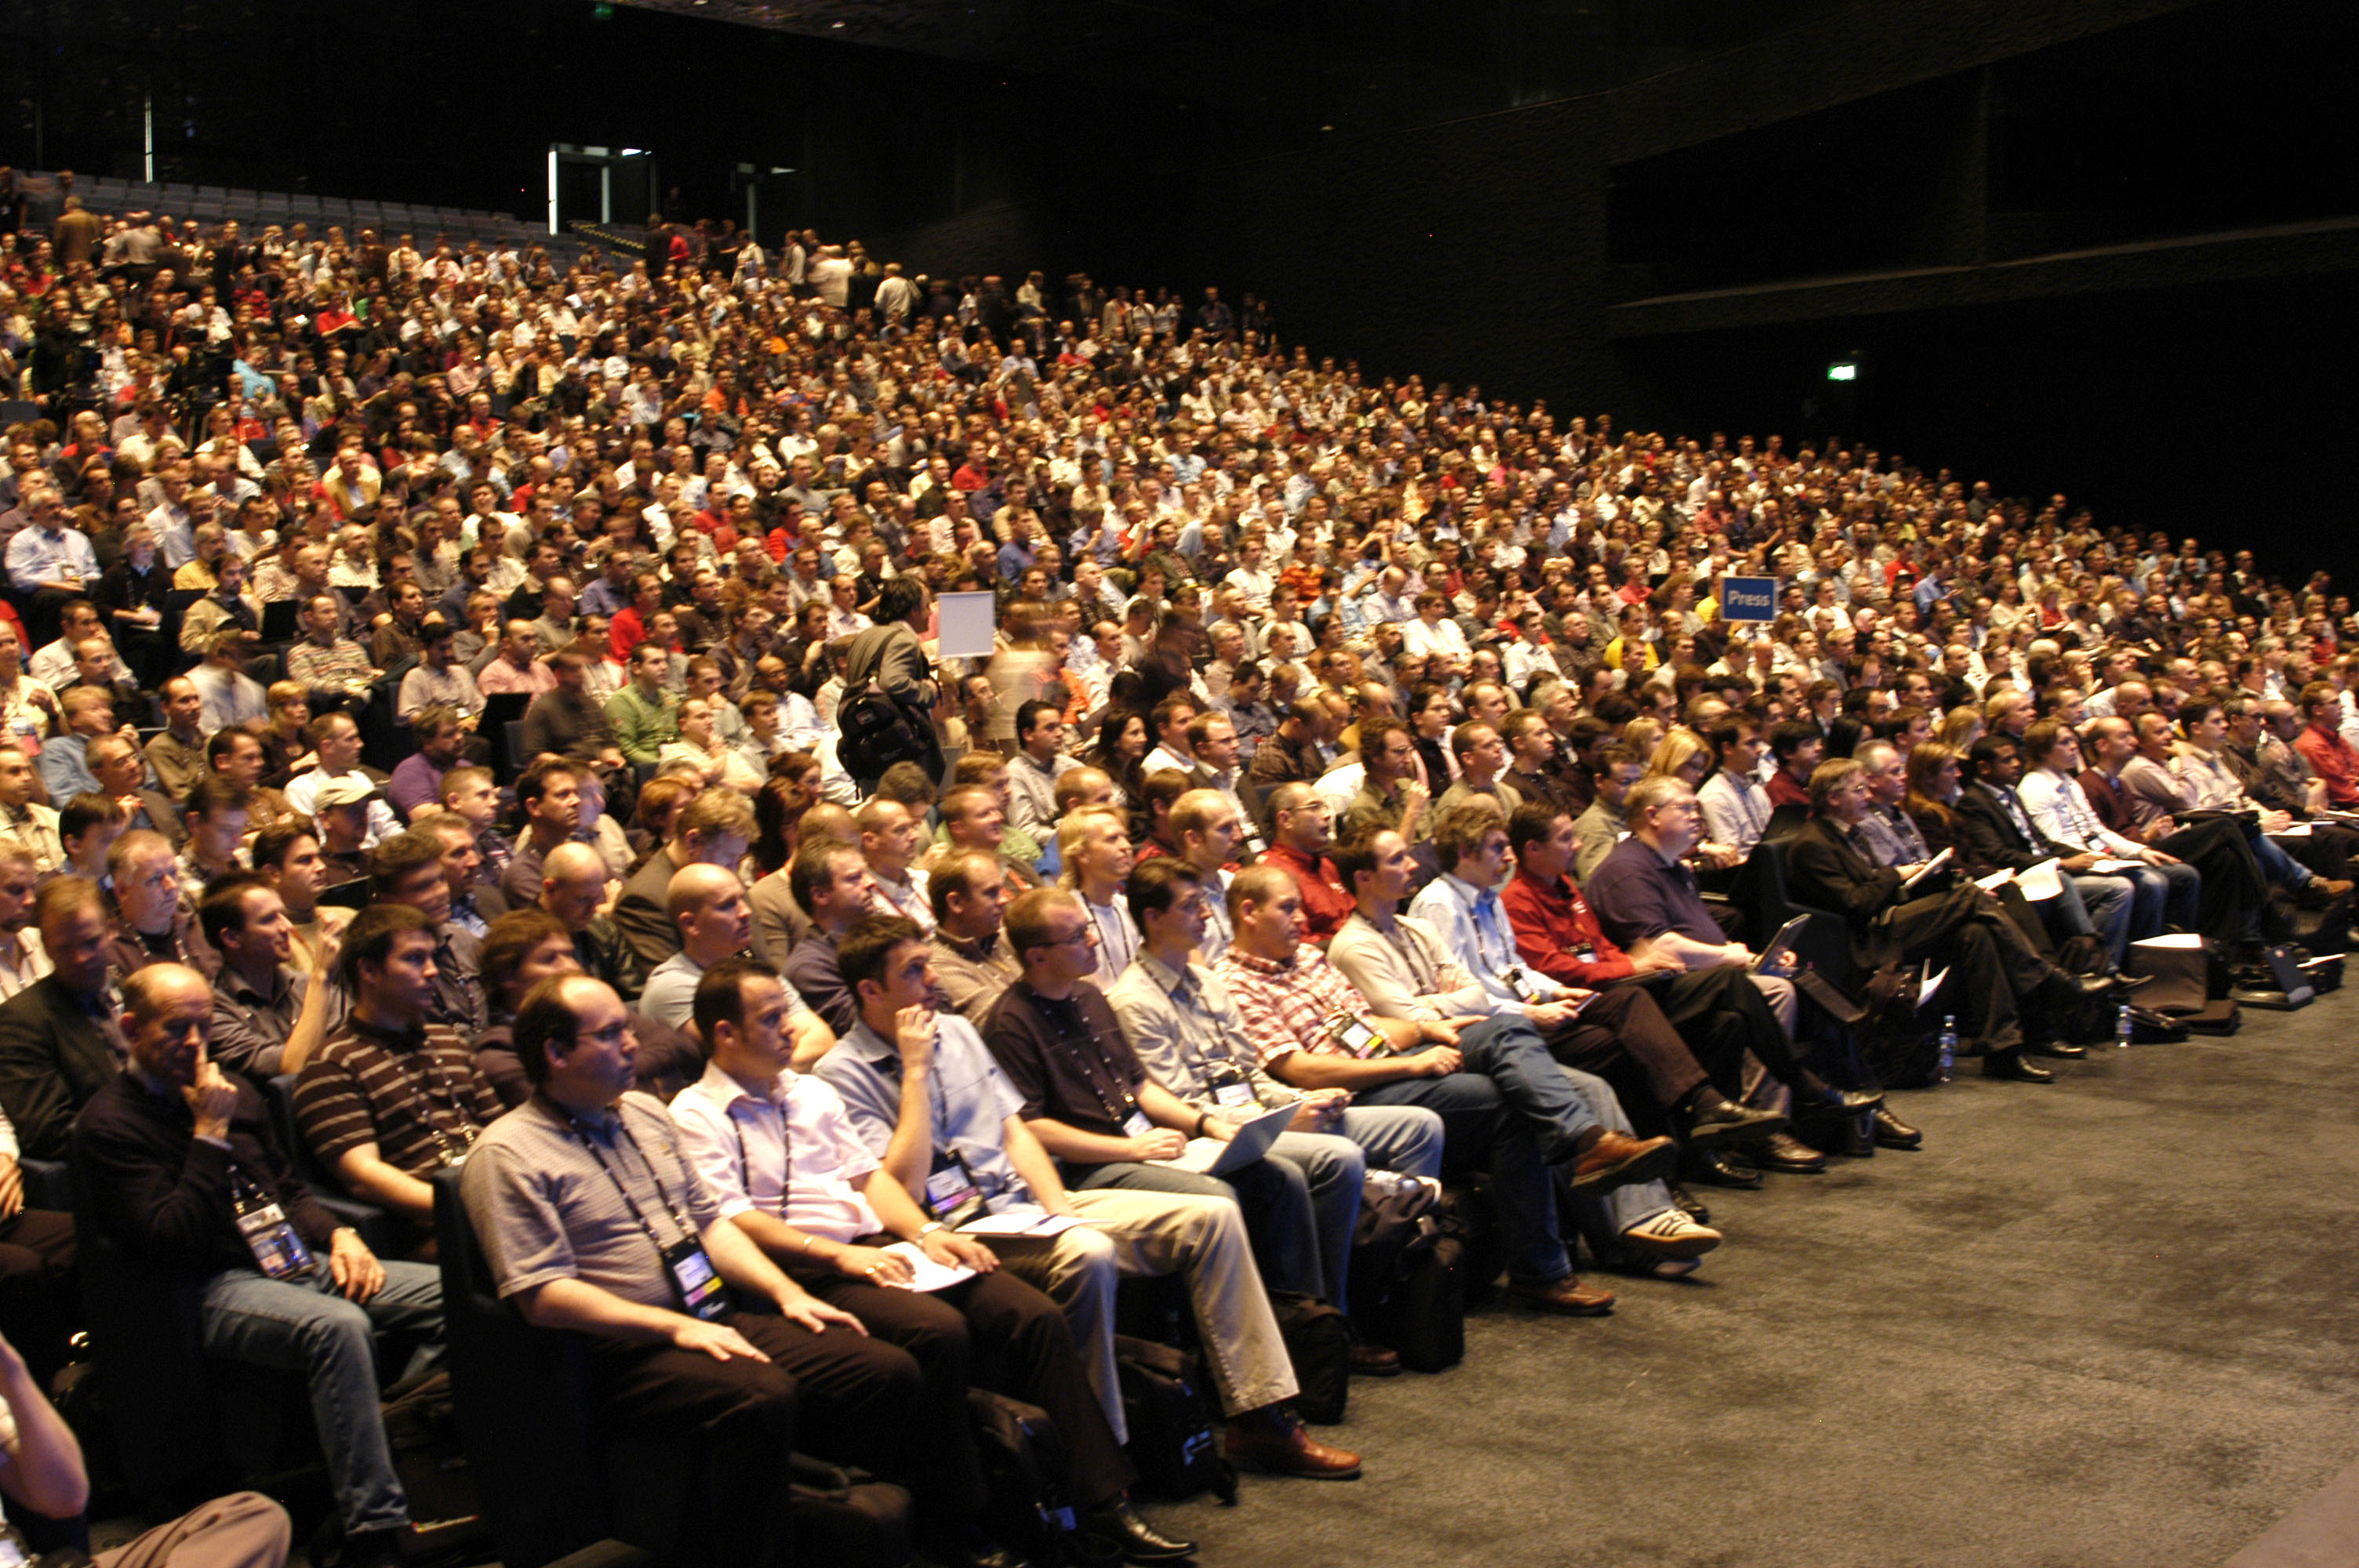 Https audience. Полный зал людей. Много людей в зале. Большая аудитория людей. Зрительный зал с людьми.